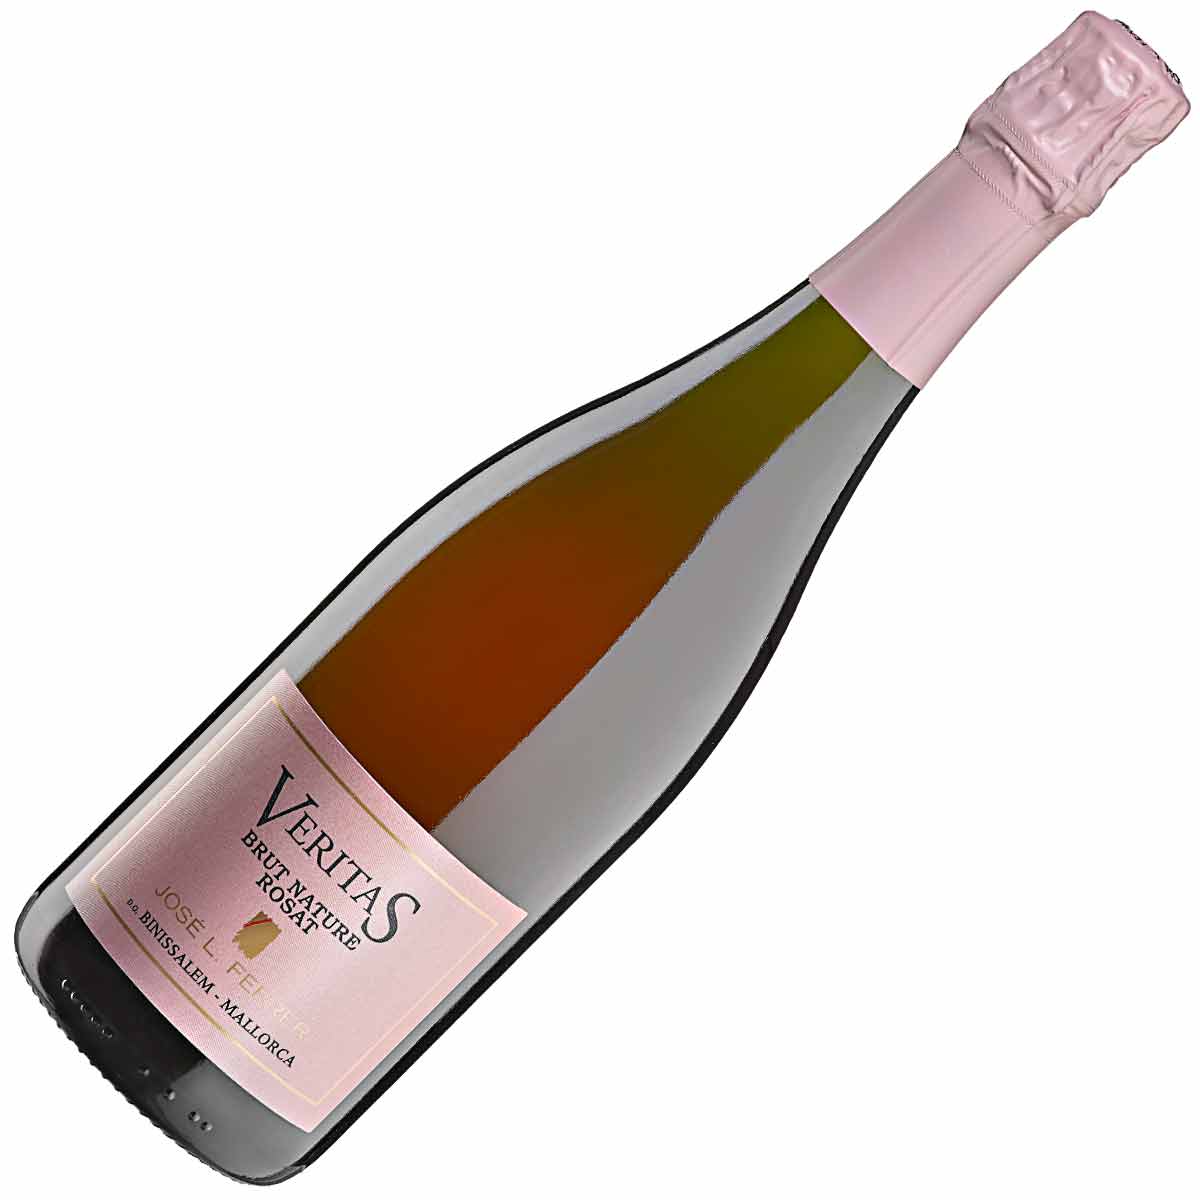 Ferrer Veritas Brut Nature champangne rosé D.O. Binissalem